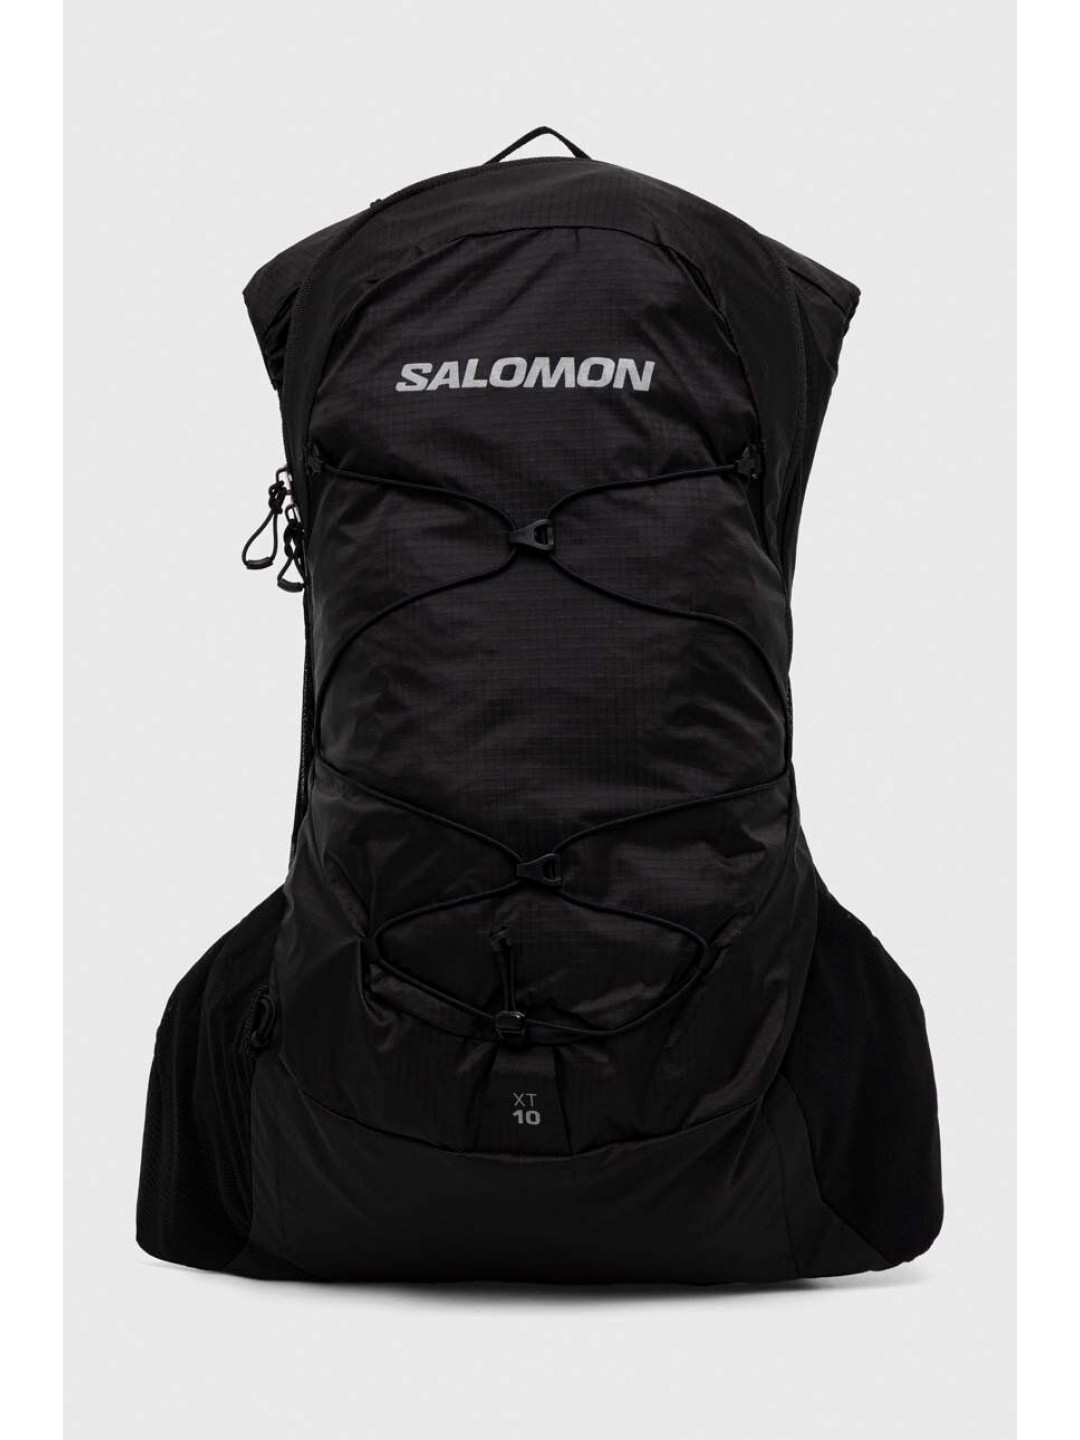 Batoh Salomon XT 10 černá barva velký hladký